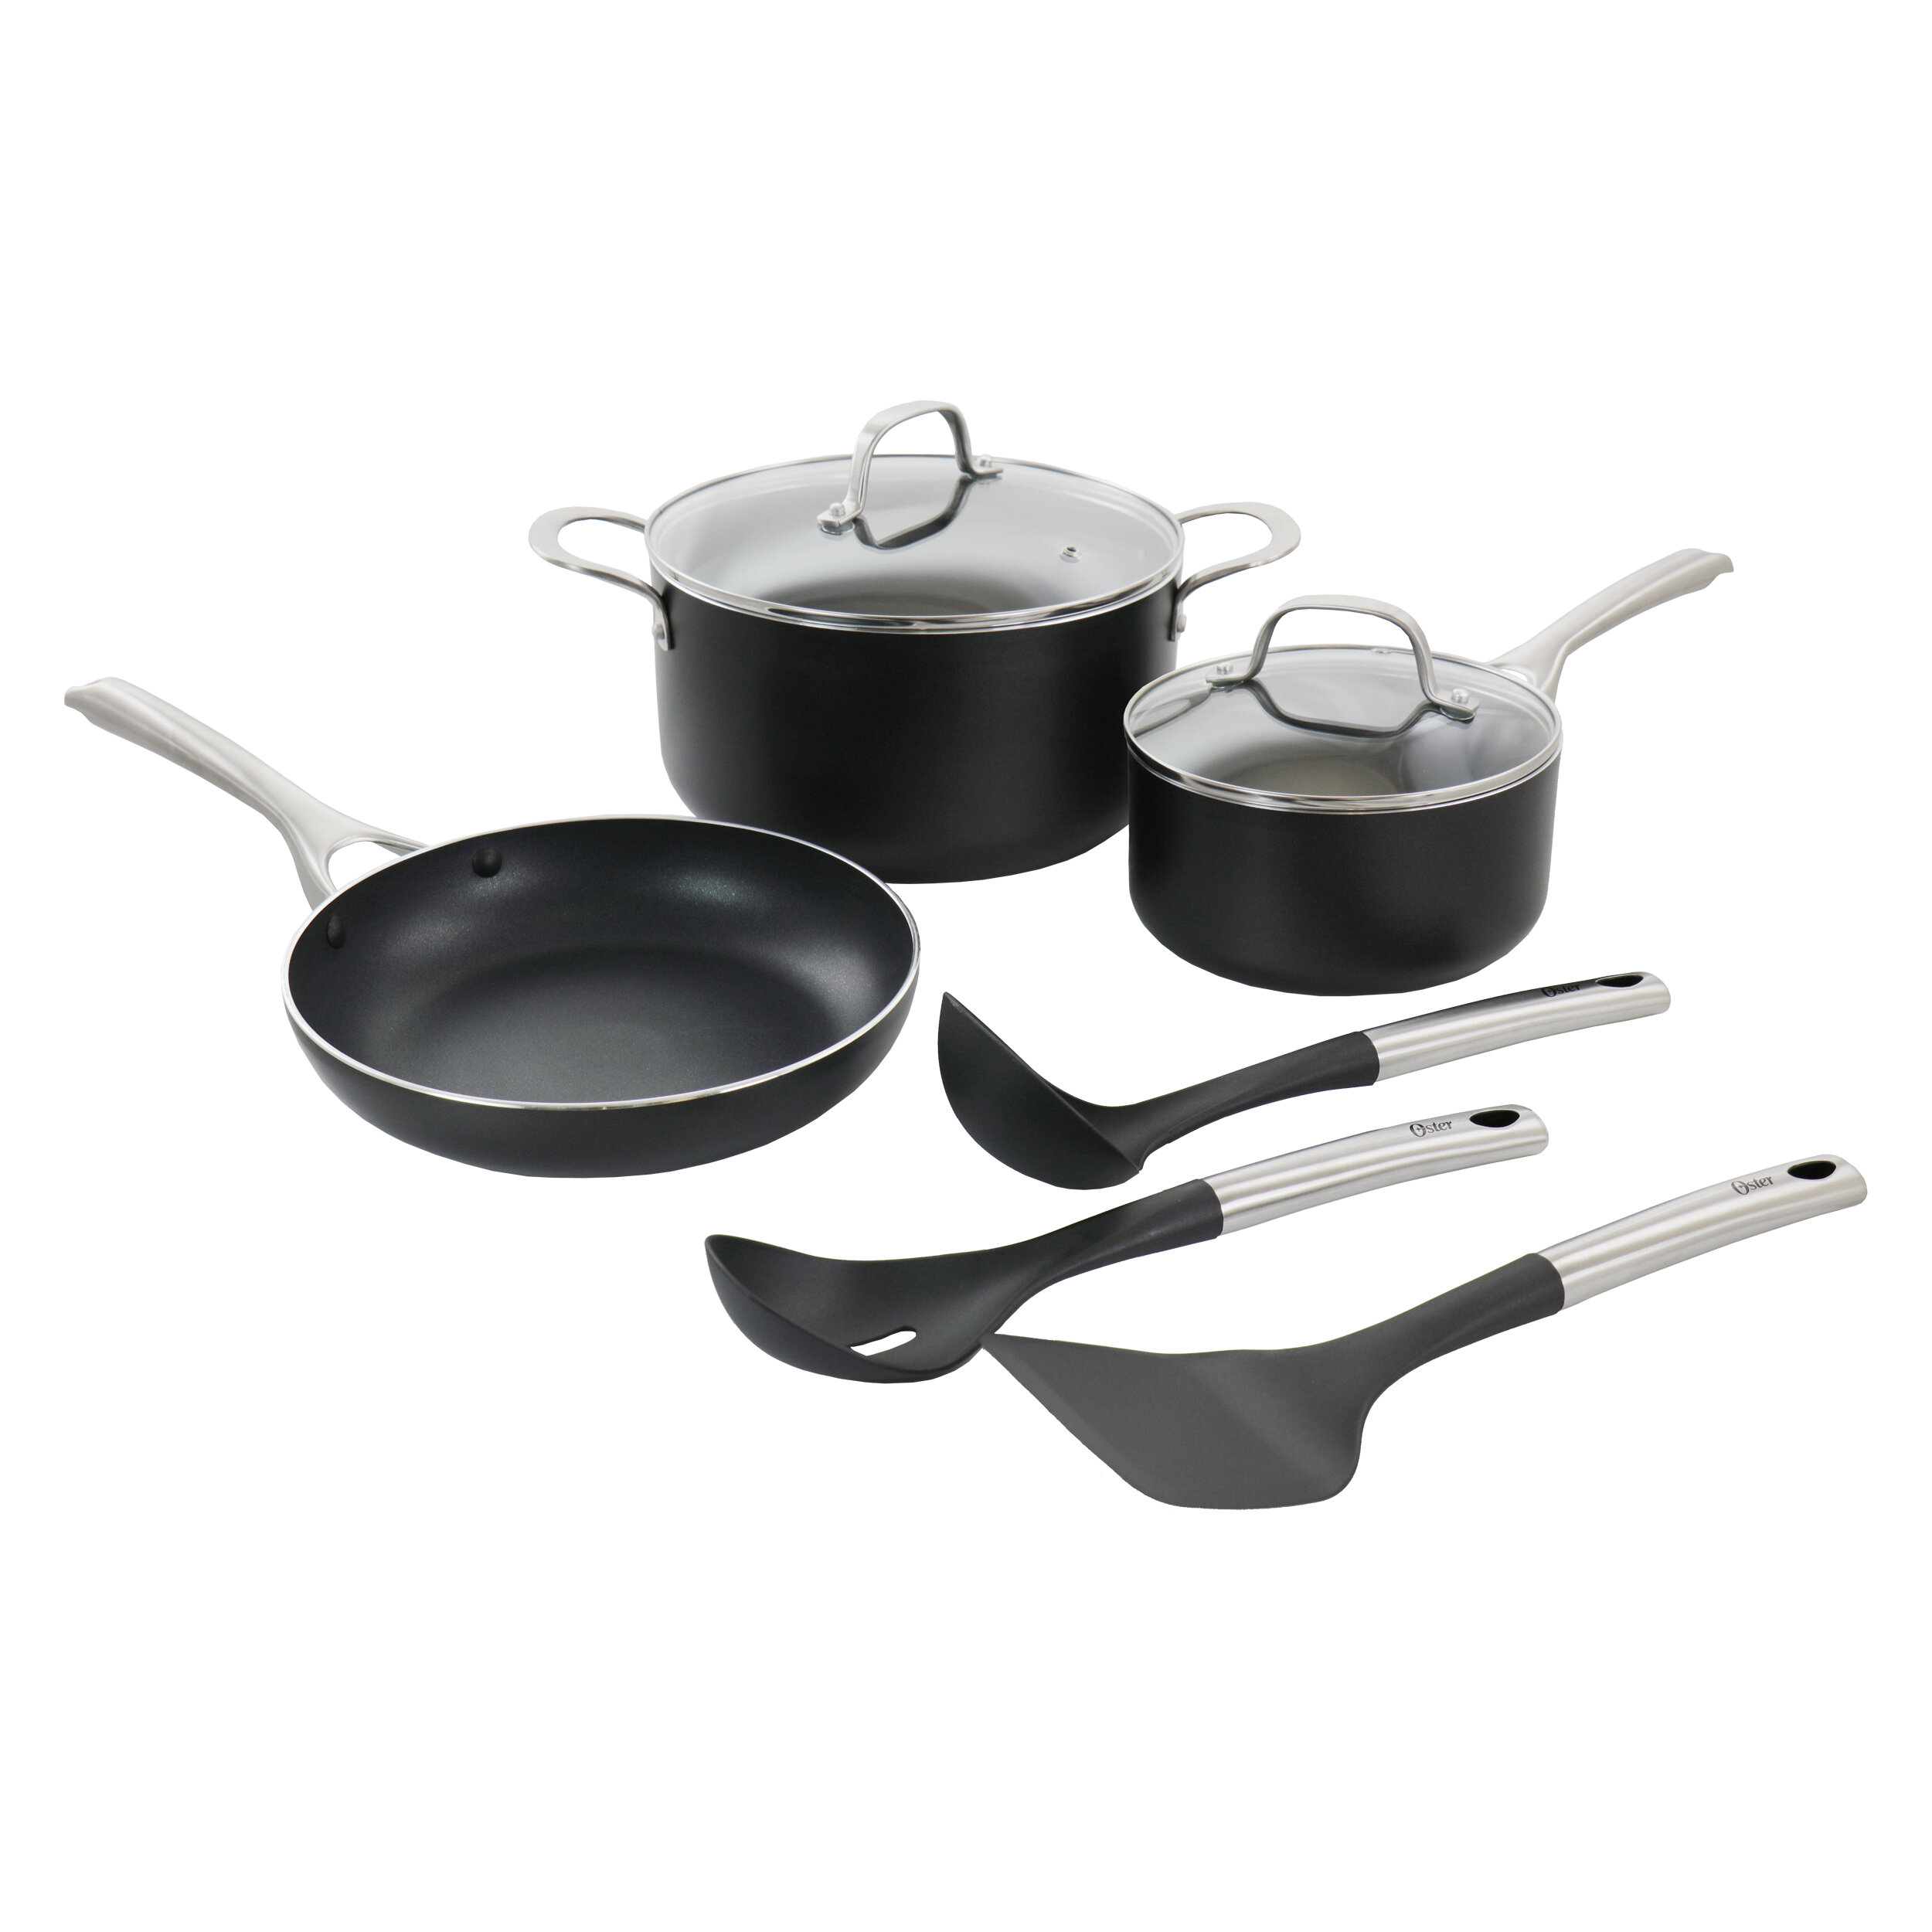 https://assets.wfcdn.com/im/33675119/compr-r85/1269/126966896/oster-8-piece-aluminum-non-stick-cookware-set.jpg